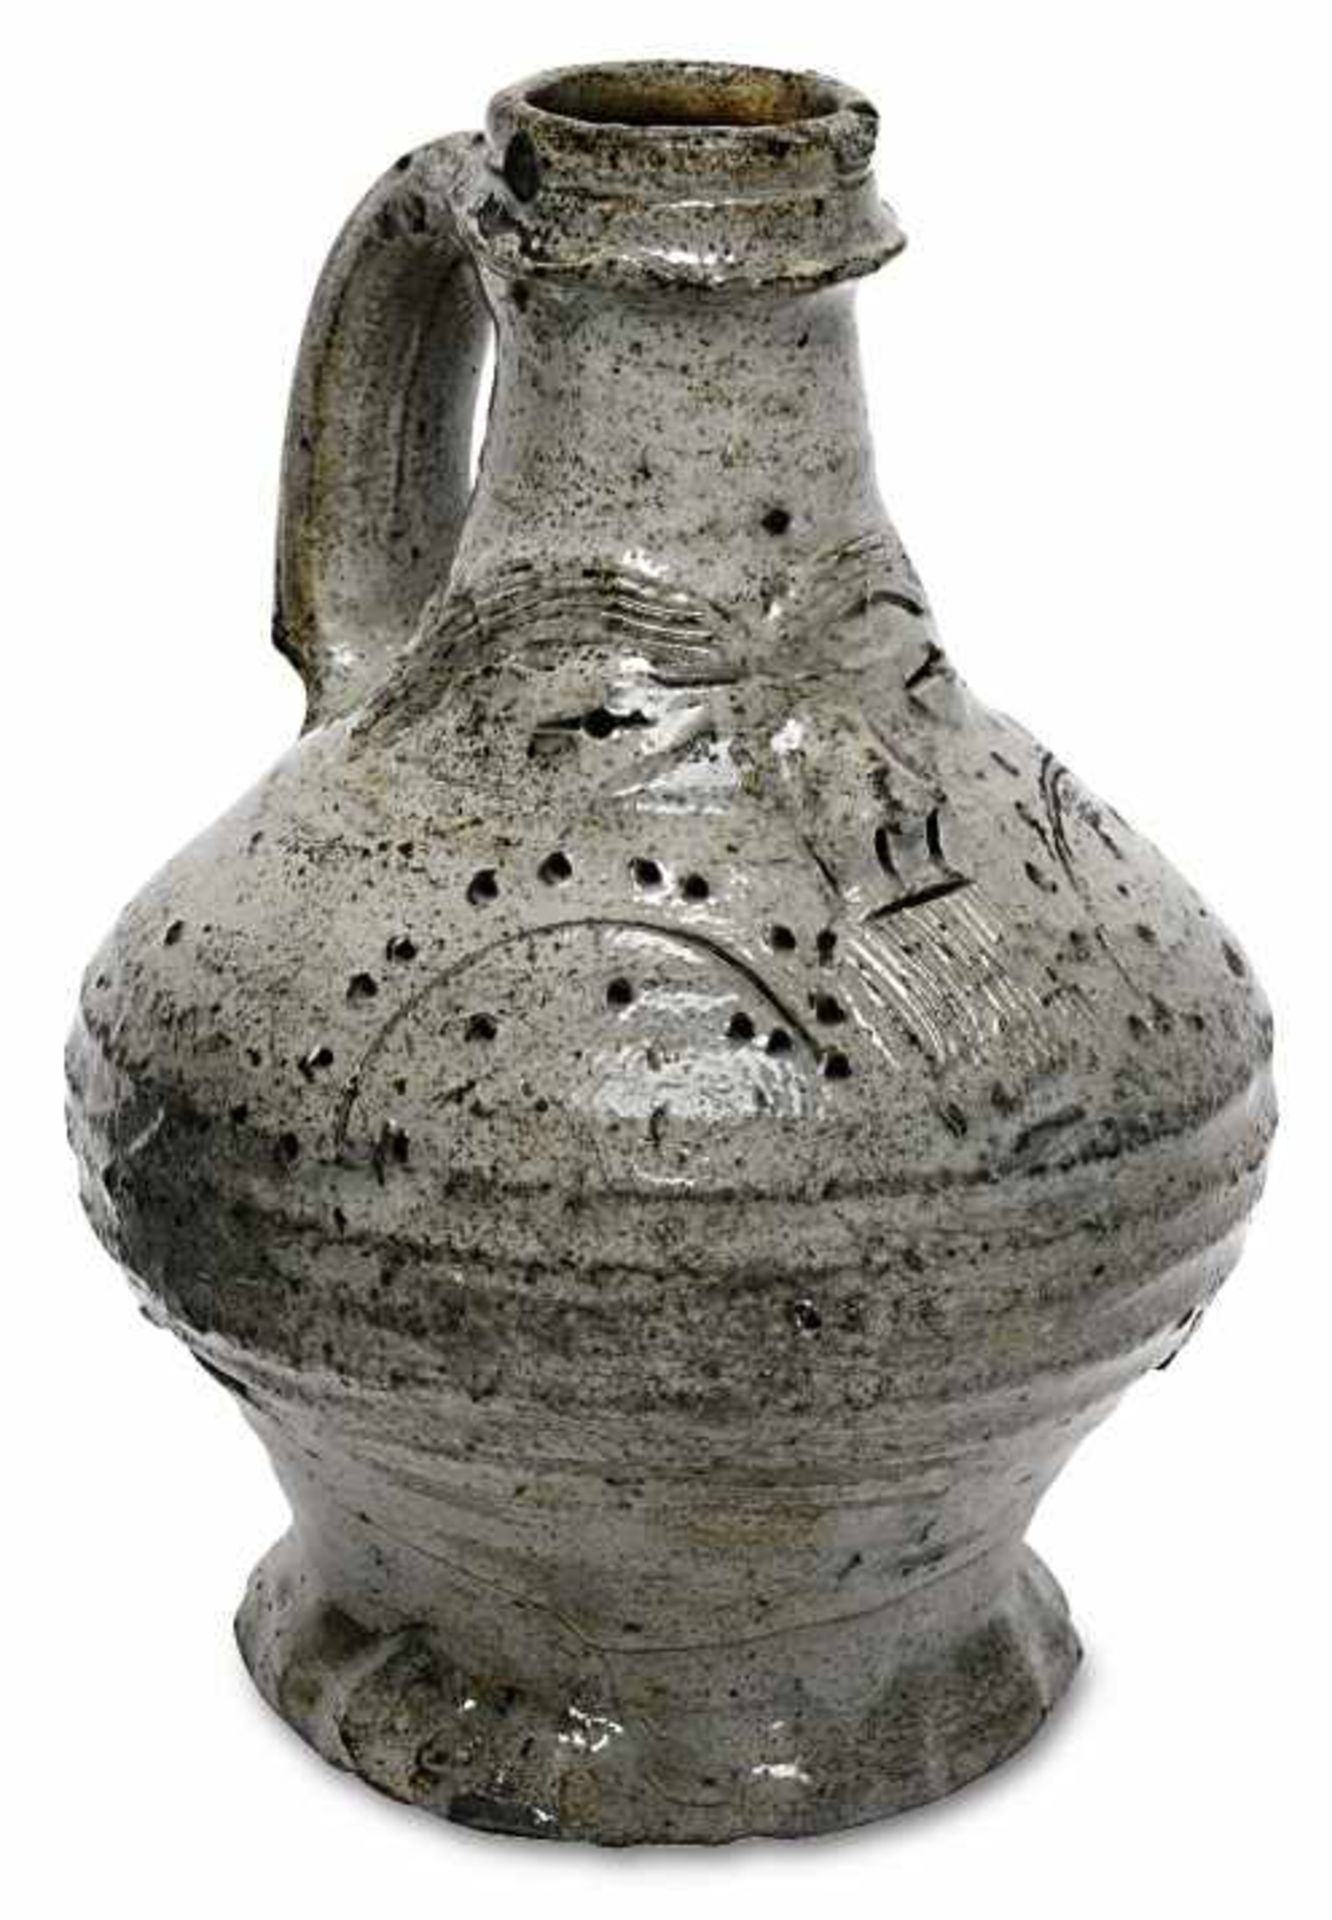 GesichtskrugRaeren, 1. Hälfte 16. Jh.Graues, salzglasiertes Steinzeug mit braunen Fleck